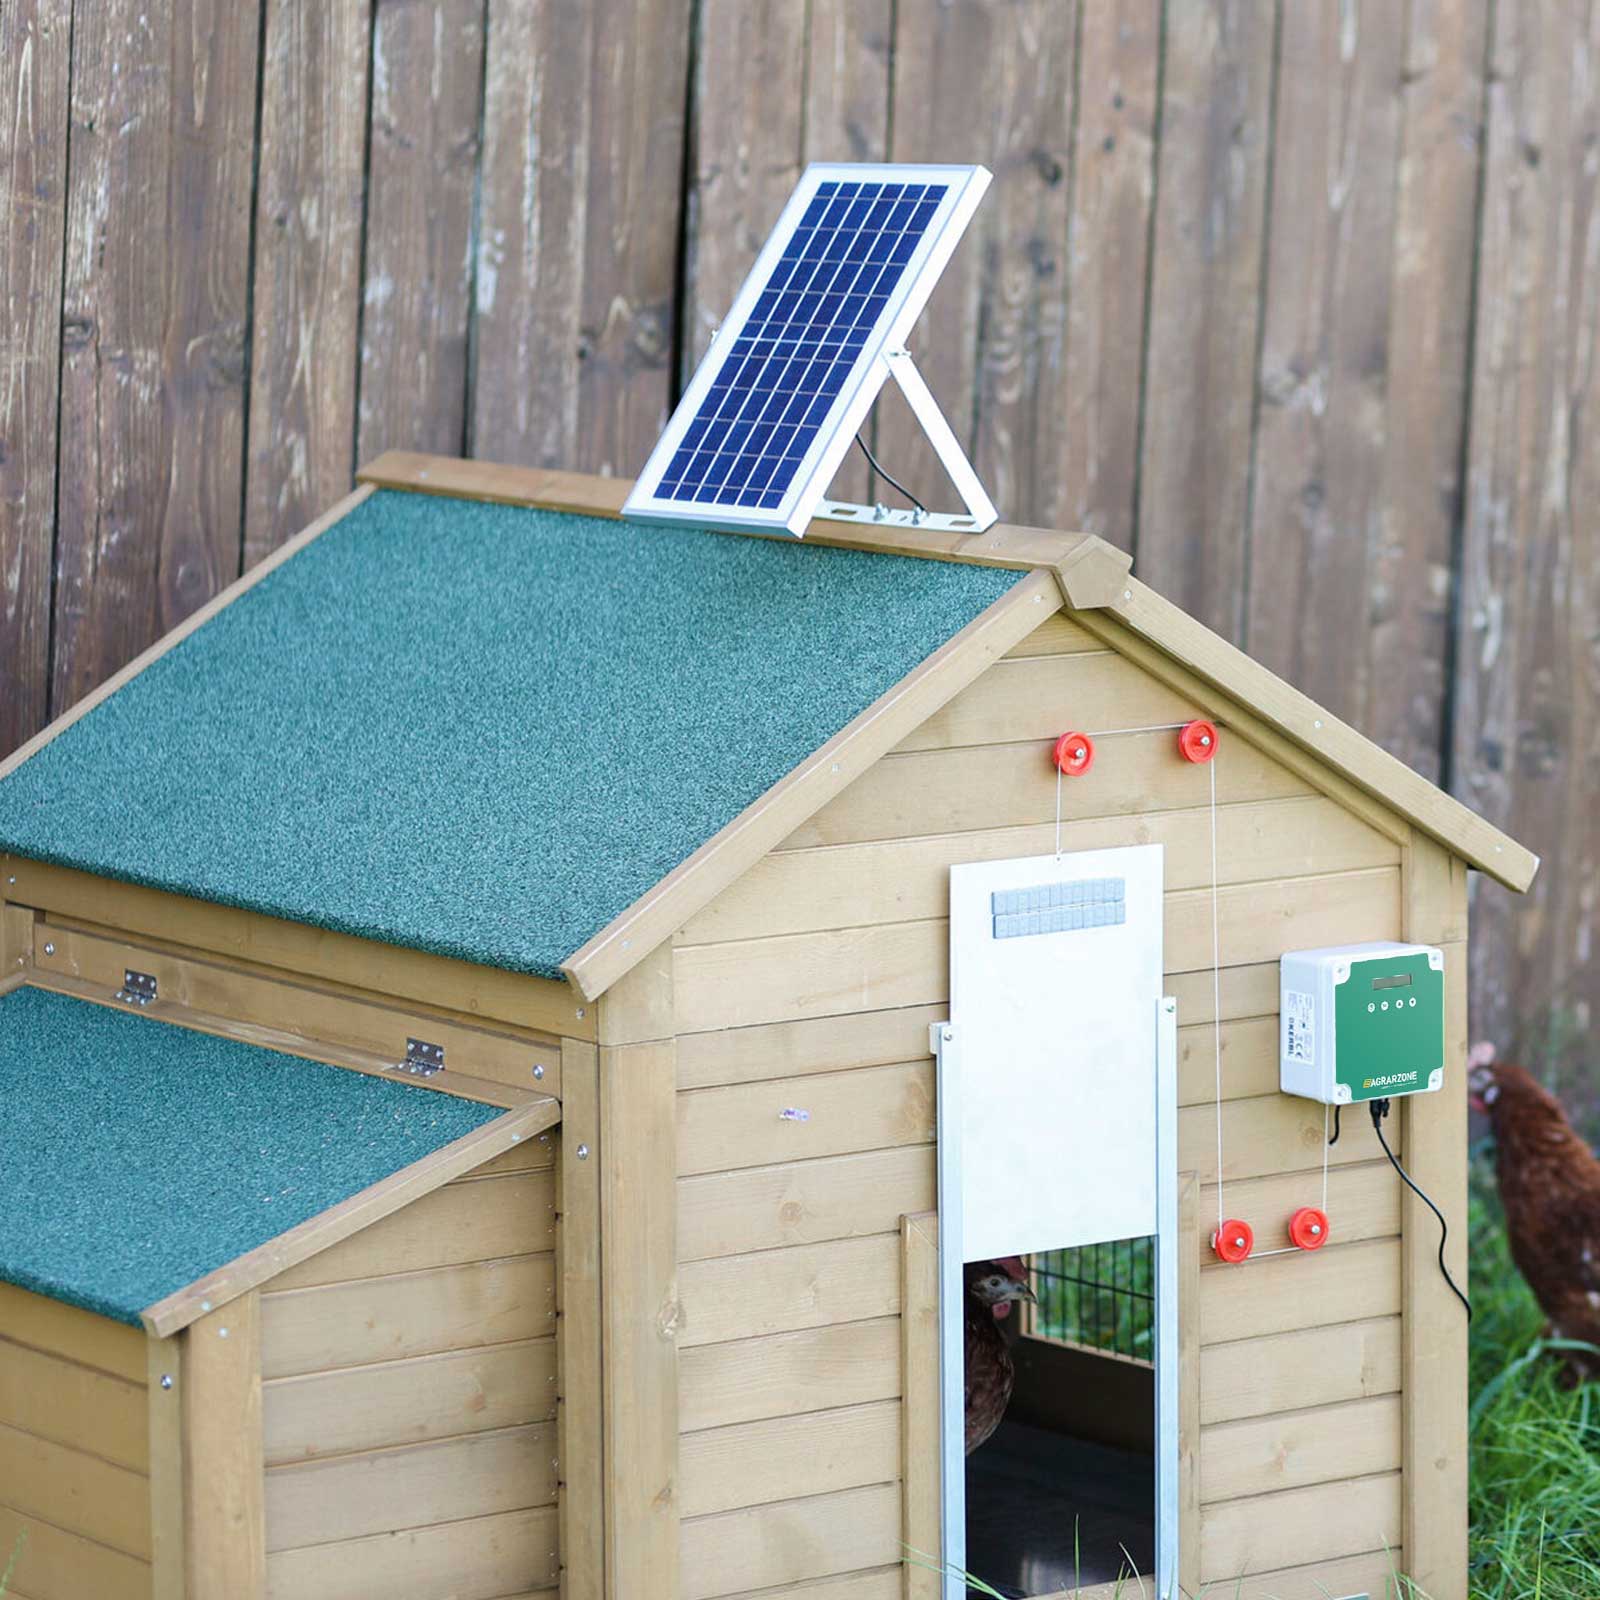 Agrarzone Porta automatica per pollaio fotovoltaica 43 x 40 cm